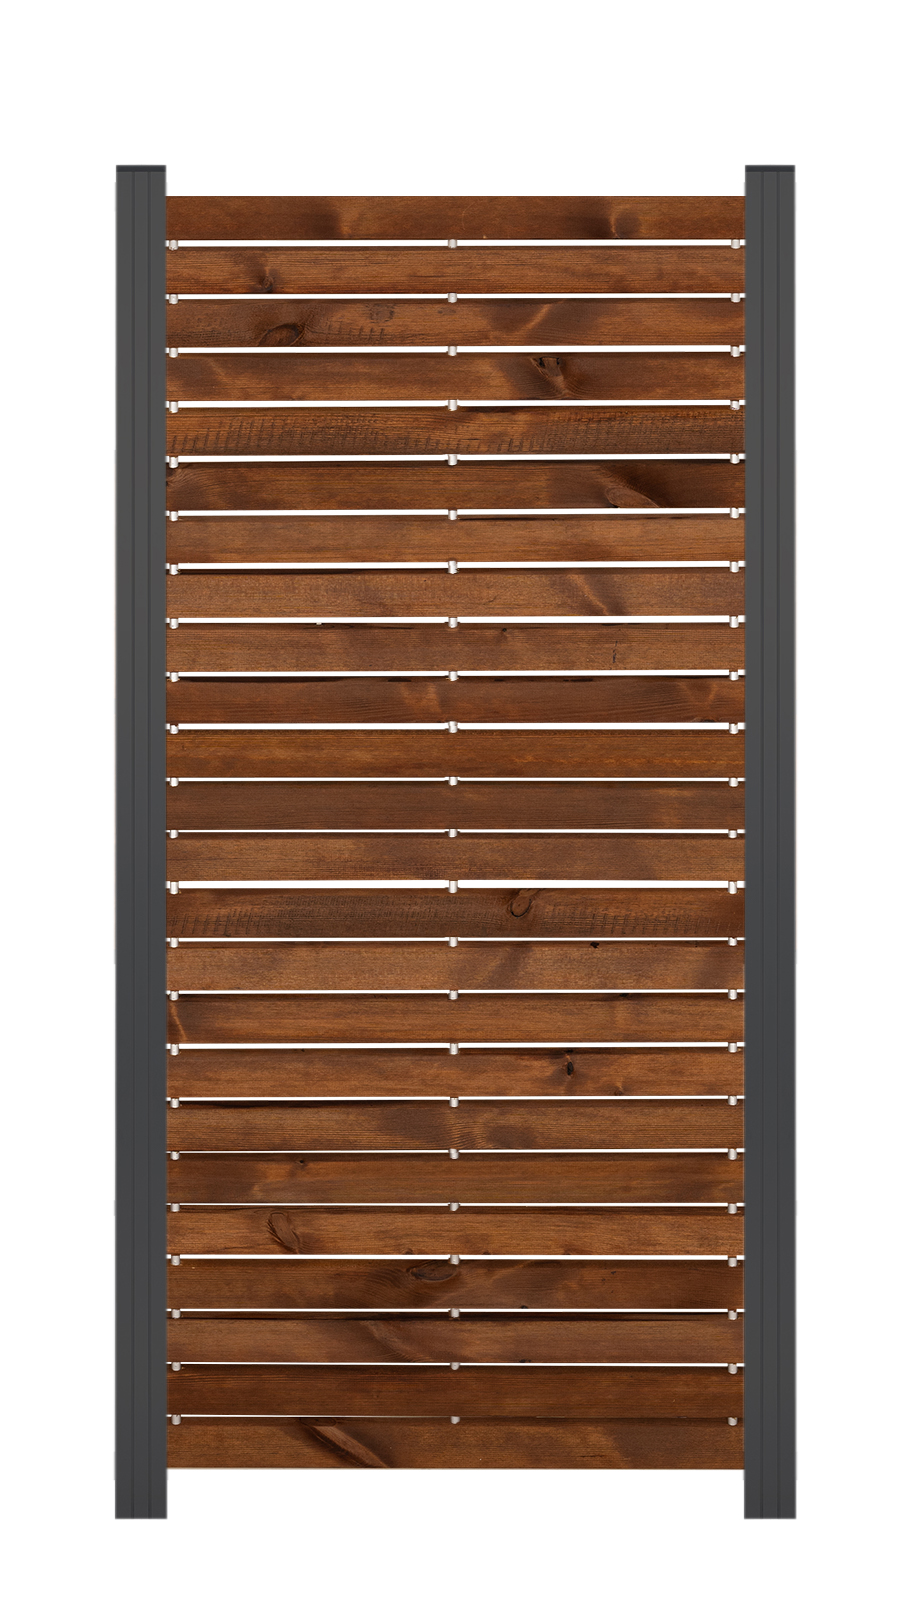 Rhombus-Steckzaun Zwischenelement nordische Kiefer,10 Jahre Farbechtheit ca. 81,5x180 cm Braun/anthrazit, Farbbehandelt  